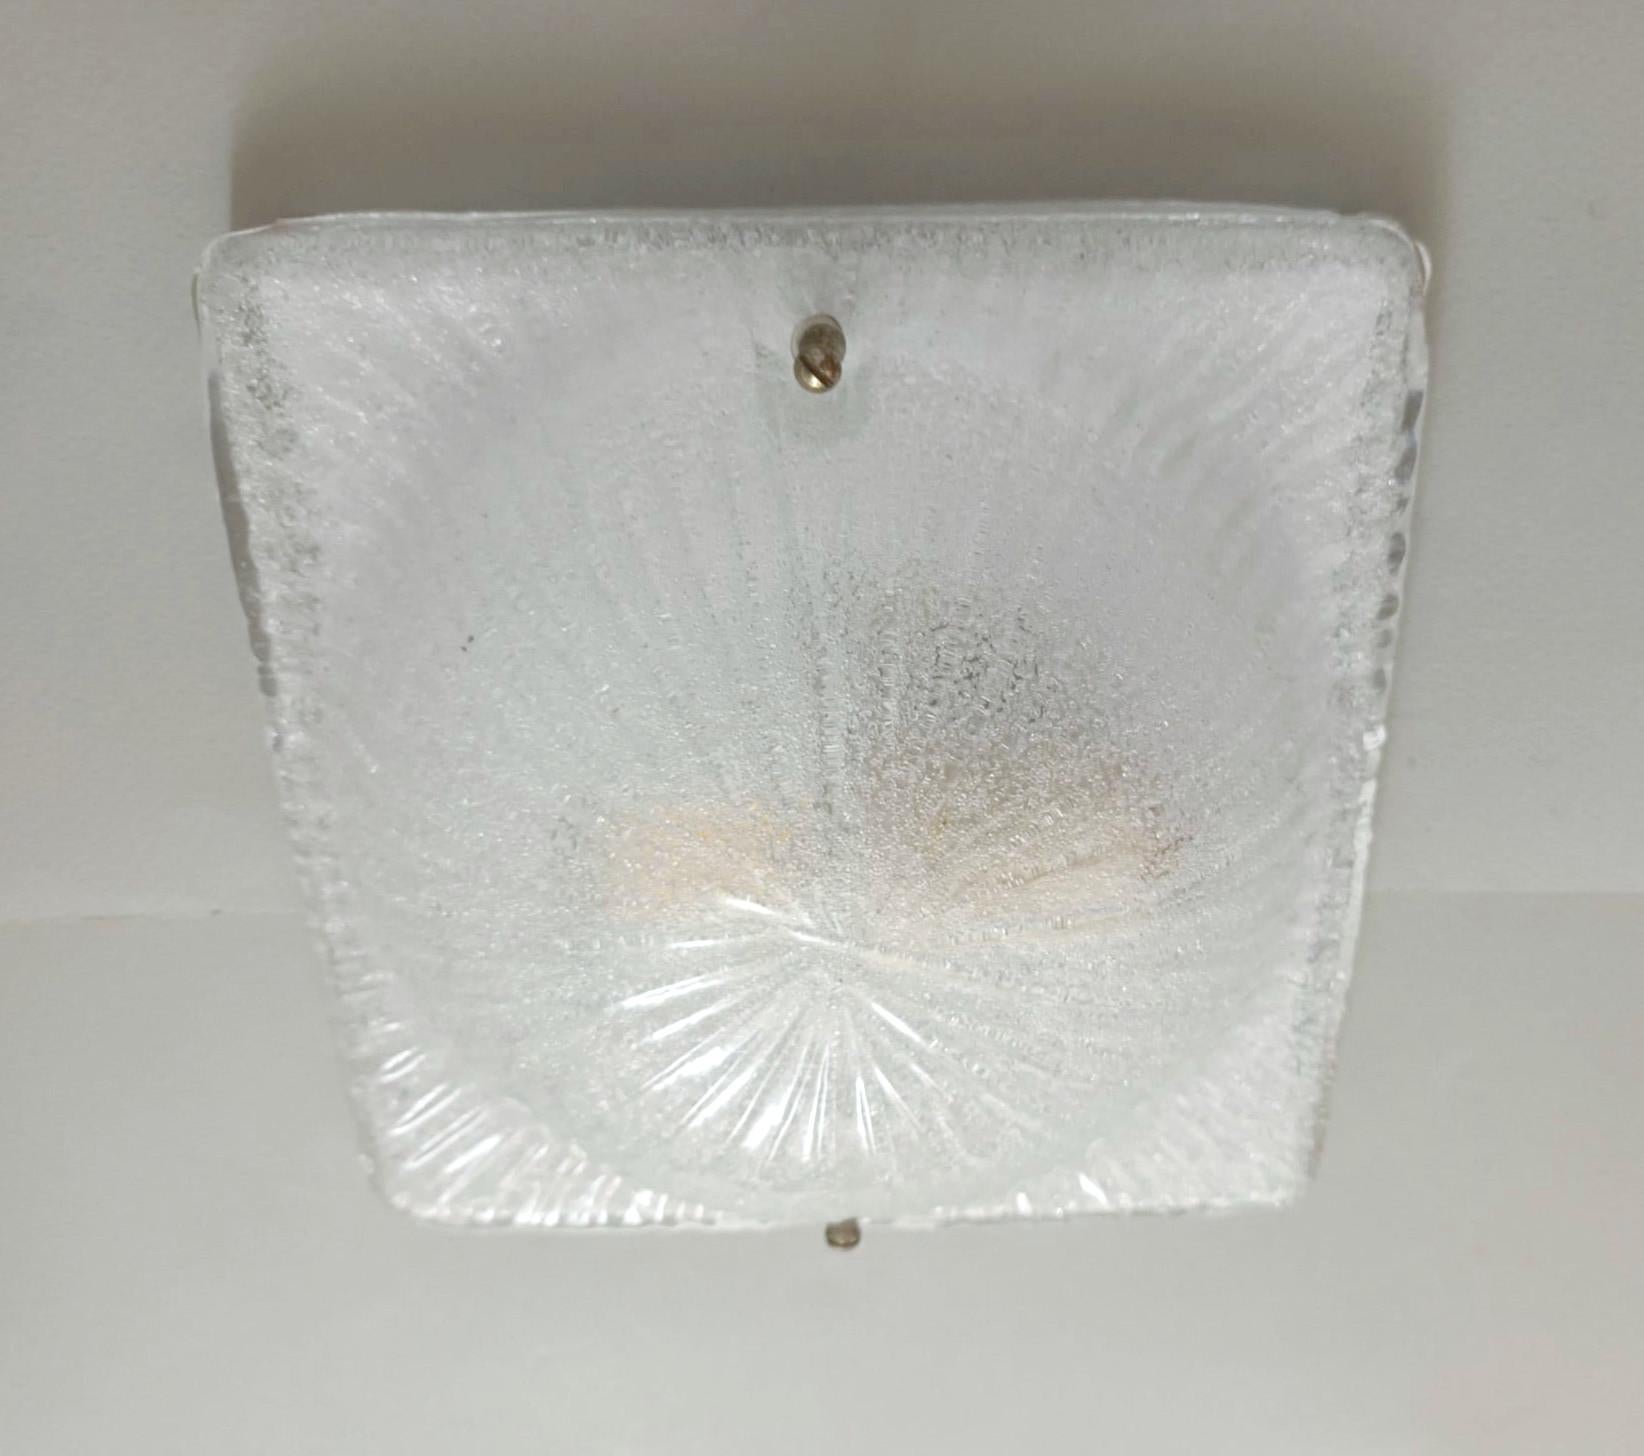 Vintage Italienische Unterputz- oder Wandleuchte mit einem einzelnen quadratischen Graniglia Murano Glasschirm / Hergestellt in Italien im Stil von Mazzega, ca. 1960er Jahre
Maße: Breite 8 Zoll, Länge 8 Zoll, Höhe 3 Zoll
1 Leuchte / Typ E26 oder E27